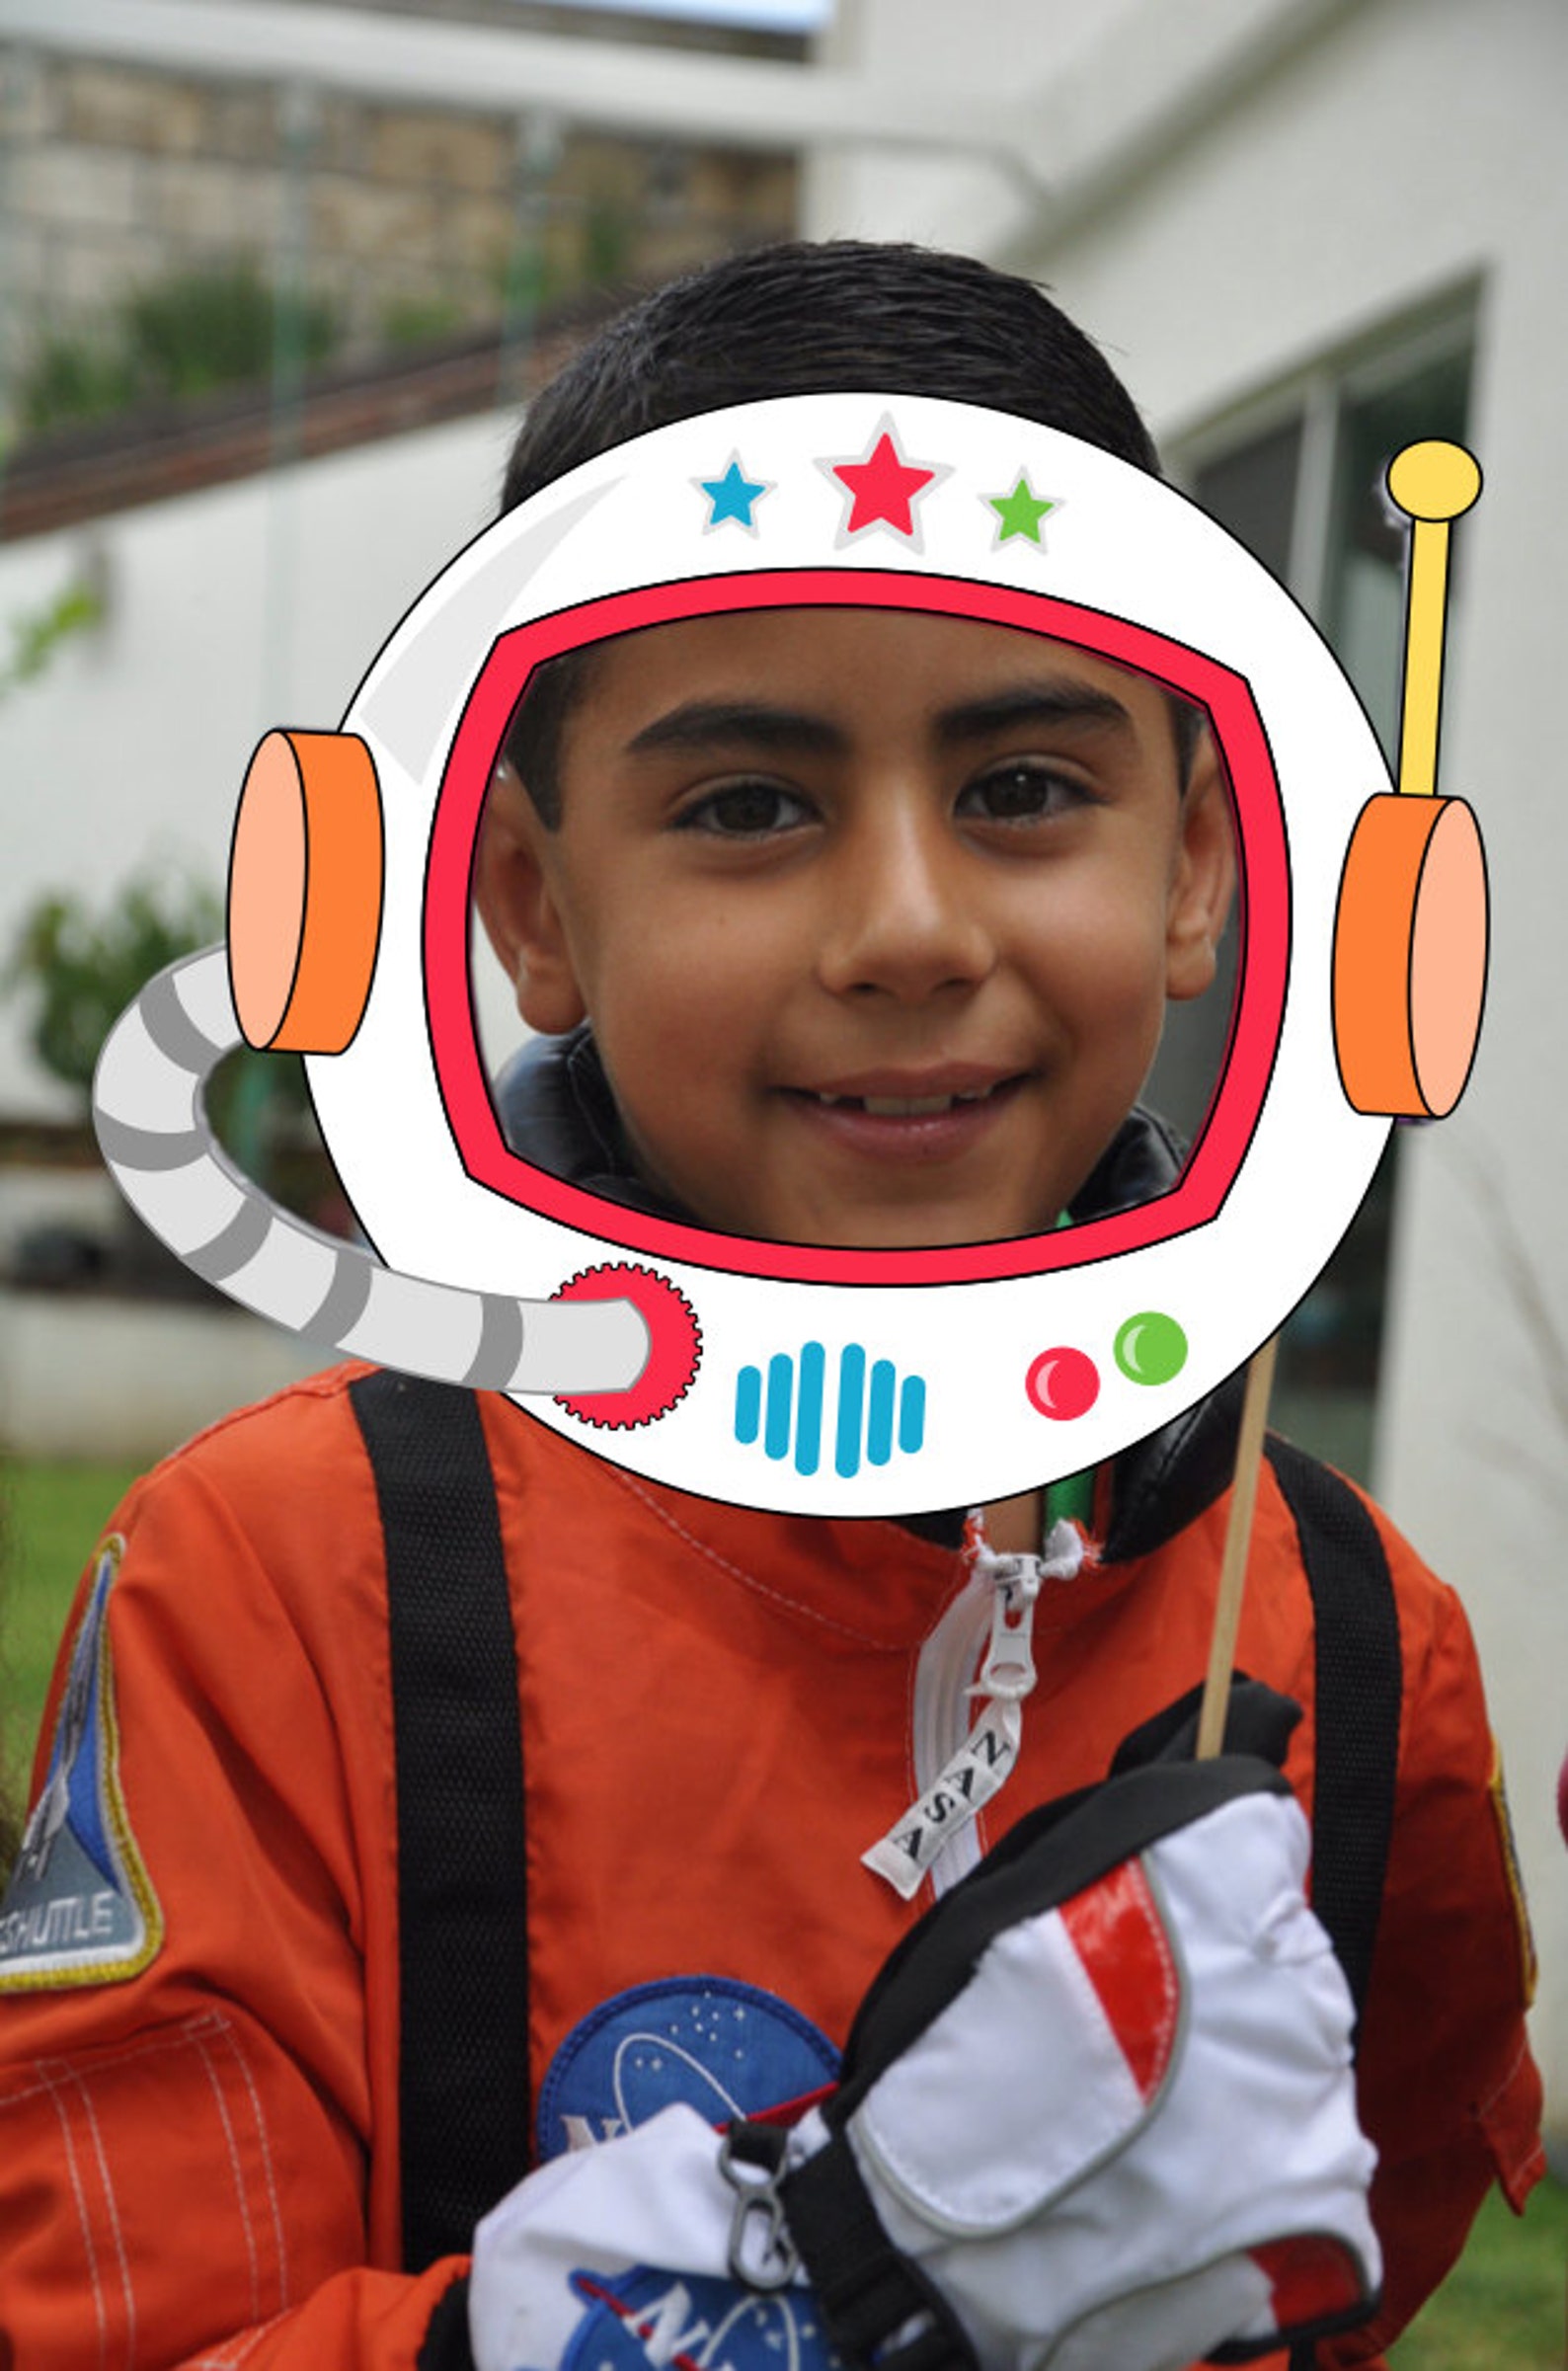 Шлем ко дню космонавтики. Шлем Космонавта детский картонный. Космический шлем для ребенка. Шлем Космонавта из картона. Космический шлем в детский сад.